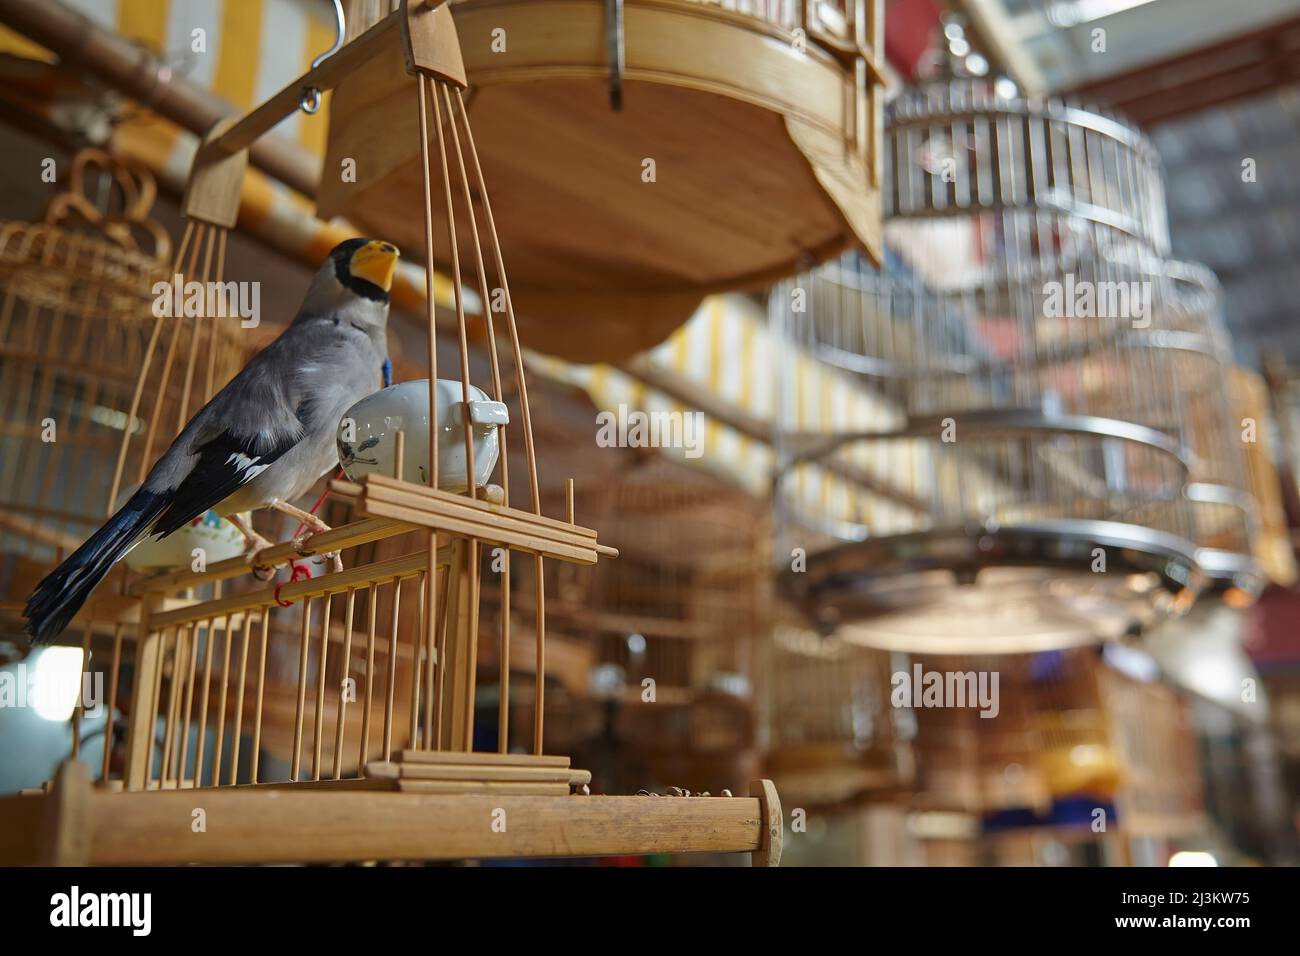 Un songbird prigioniero al mercato degli uccelli, del pesce e dell'insetto, Shanghai, Cina; il mercato degli uccelli, del pesce e dell'insetto, Laoximen, Shanghai, Cina. Foto Stock